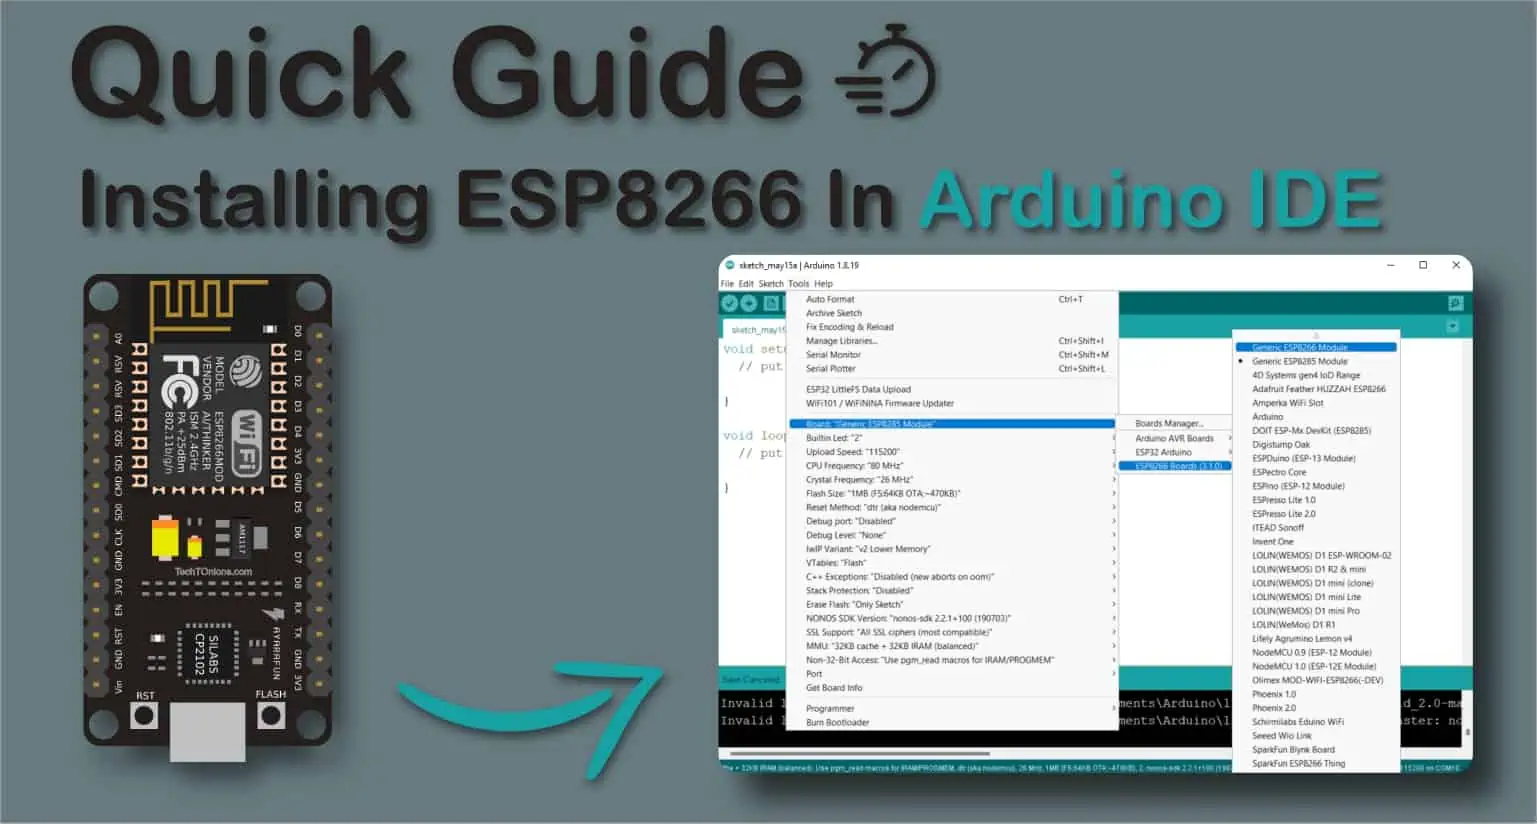 Quick Guide Installing ESP8266 In Arduino IDE Feacherd Image